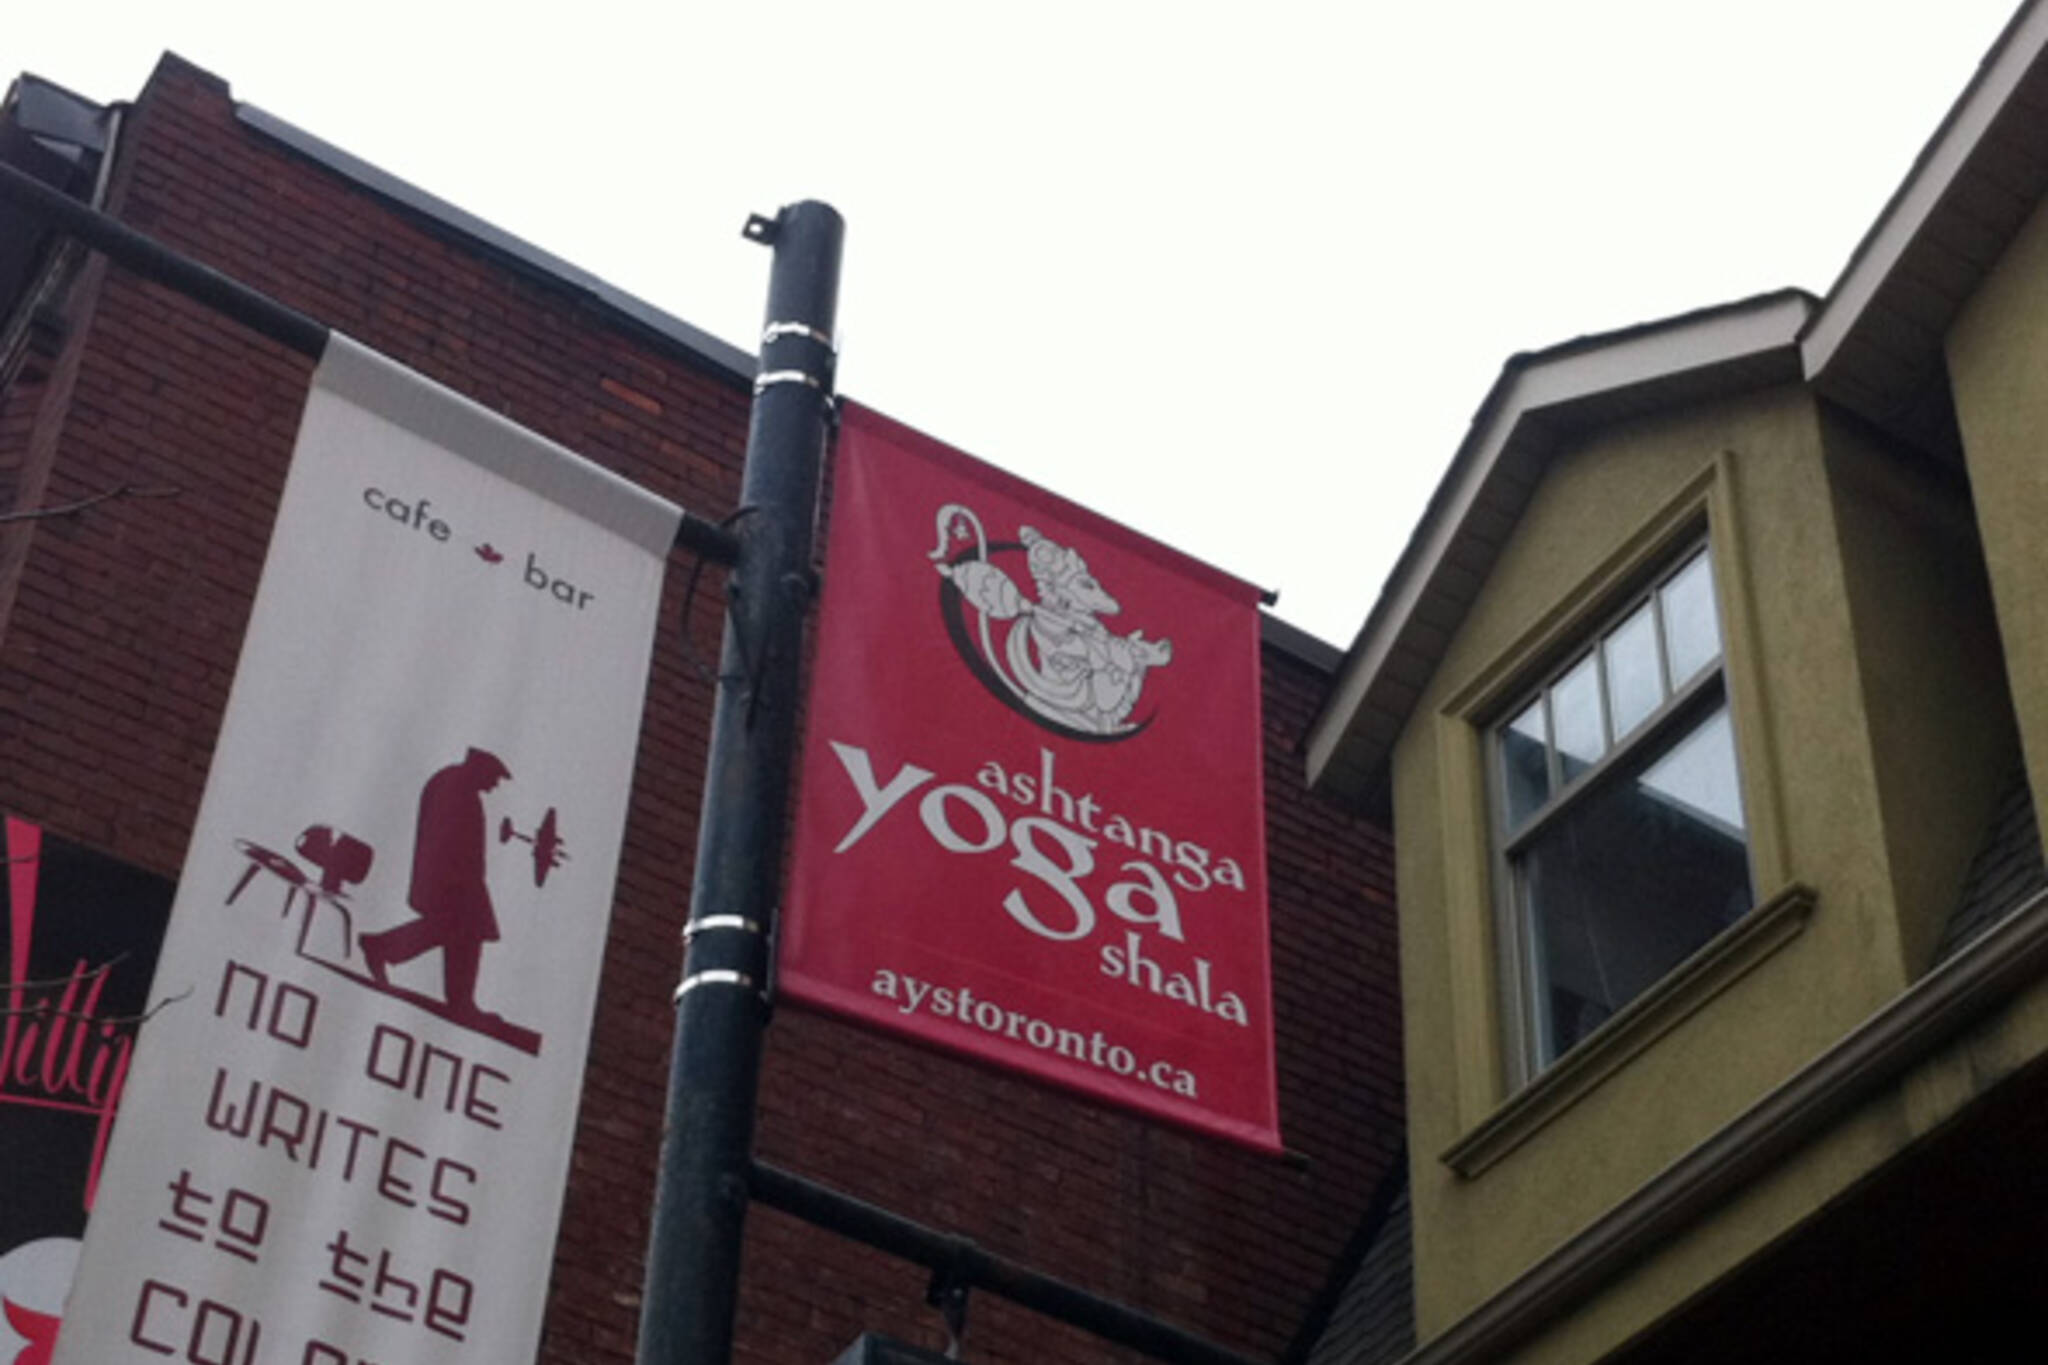 Ashtanga Yoga Shala Toronto